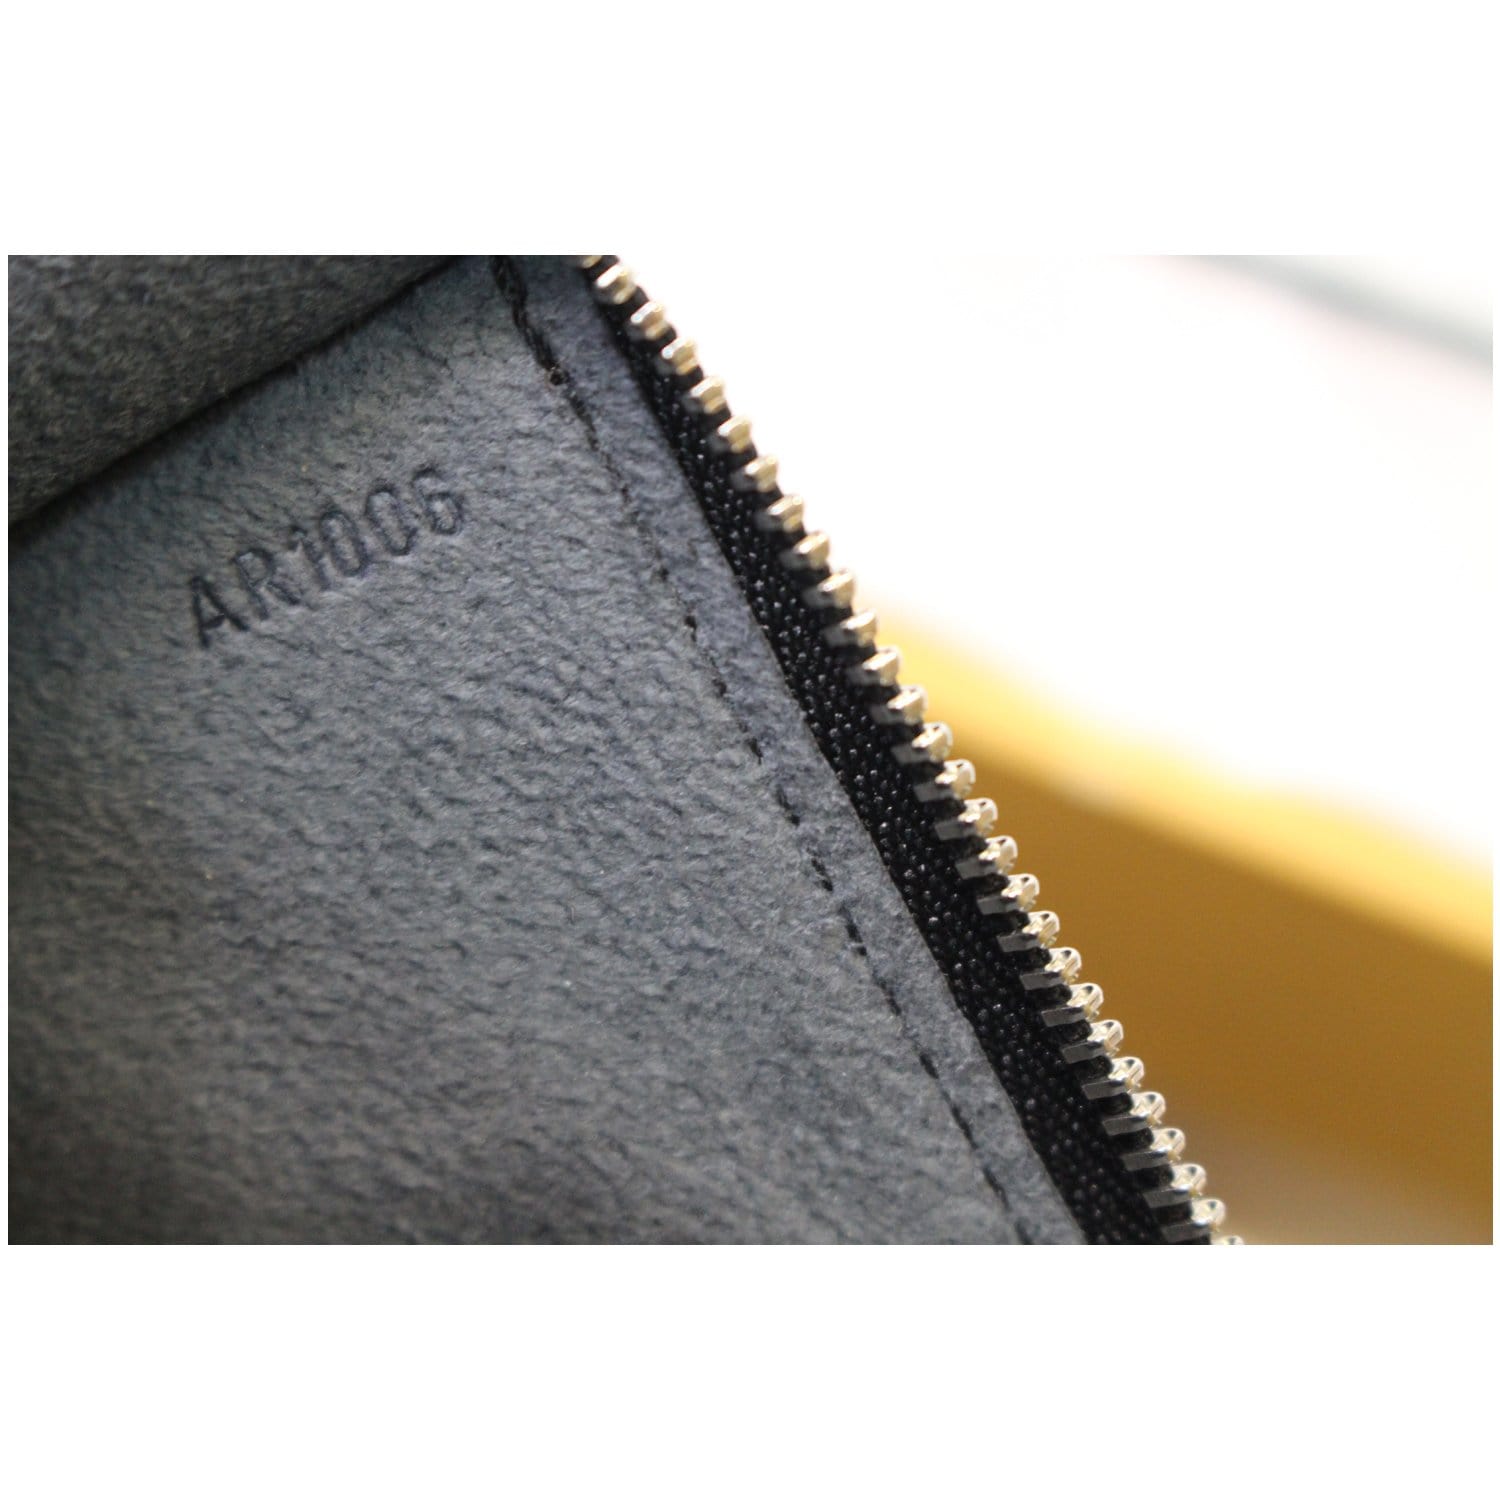 Pochette accessoire leather handbag Louis Vuitton Black in Leather -  24984066